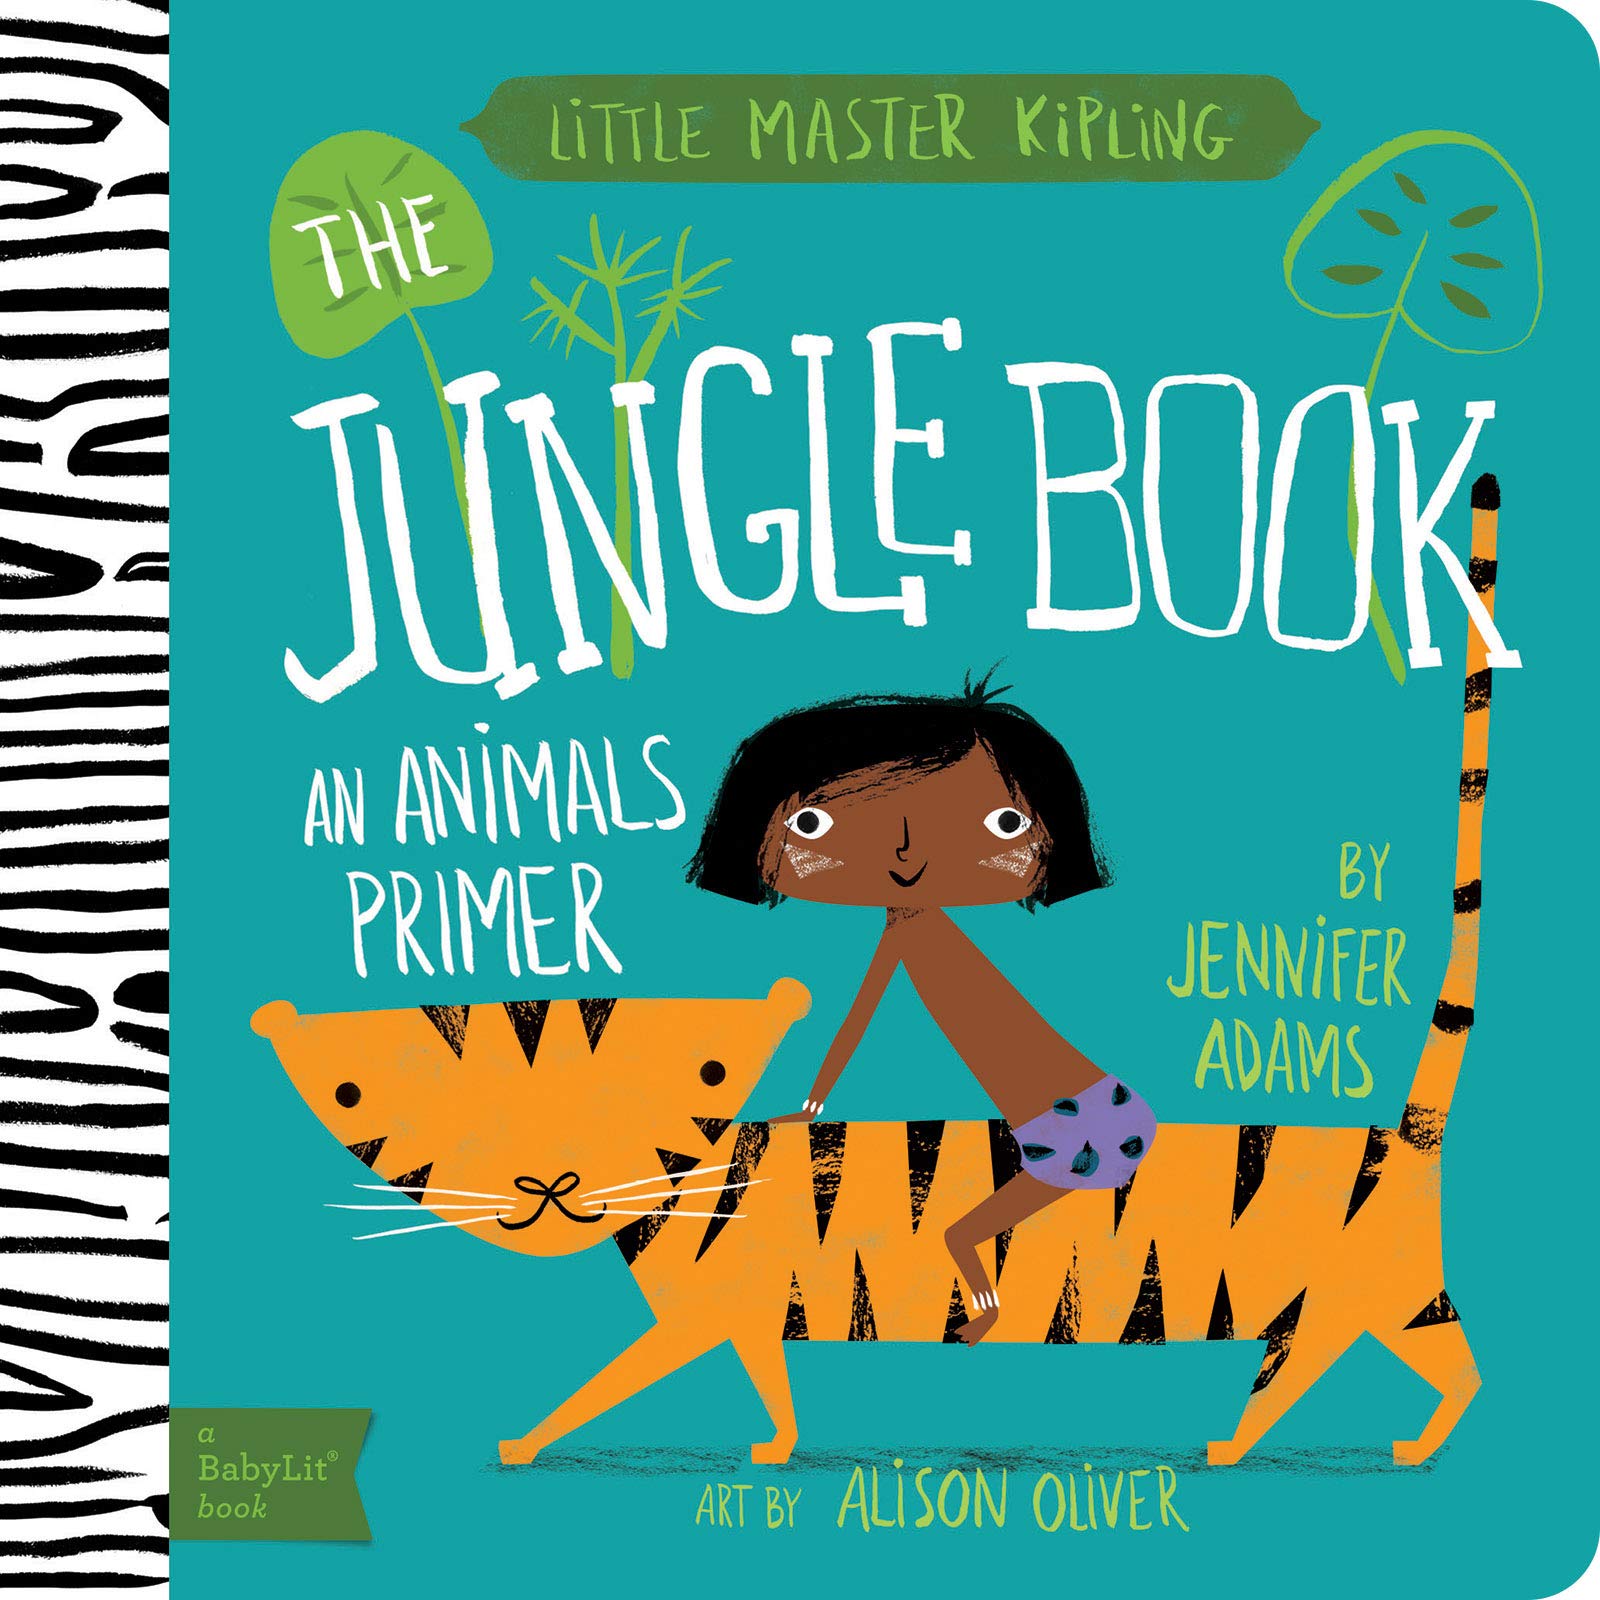 Little Master Kipling: The Jungle Book (BabyLit) | Jennifer Adams